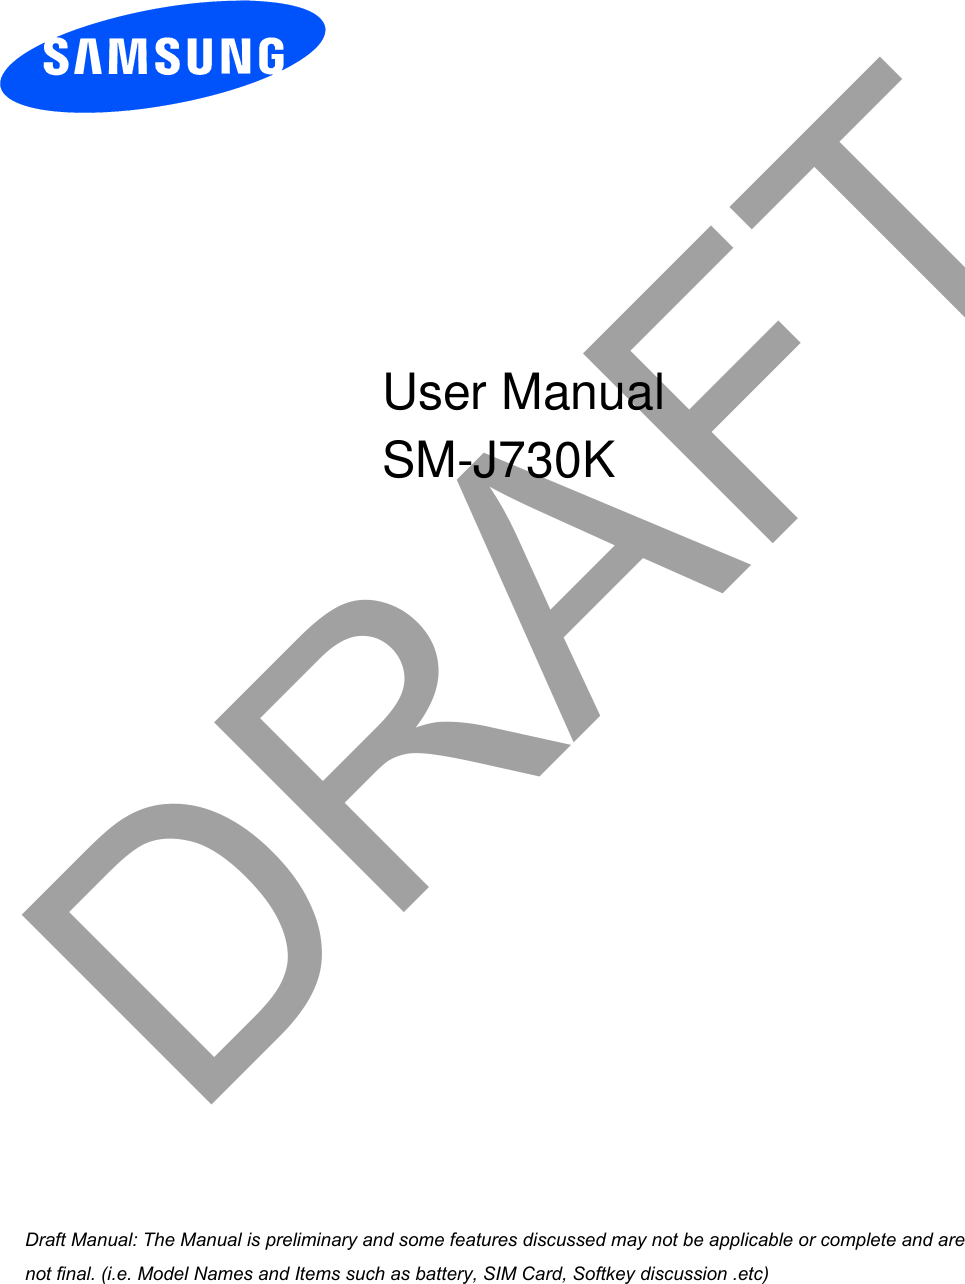  DRAFTa ana  ana  na and  a dd a n  aa   and a n na  d a and   a a  ad  dn User Manual SM-J730K 